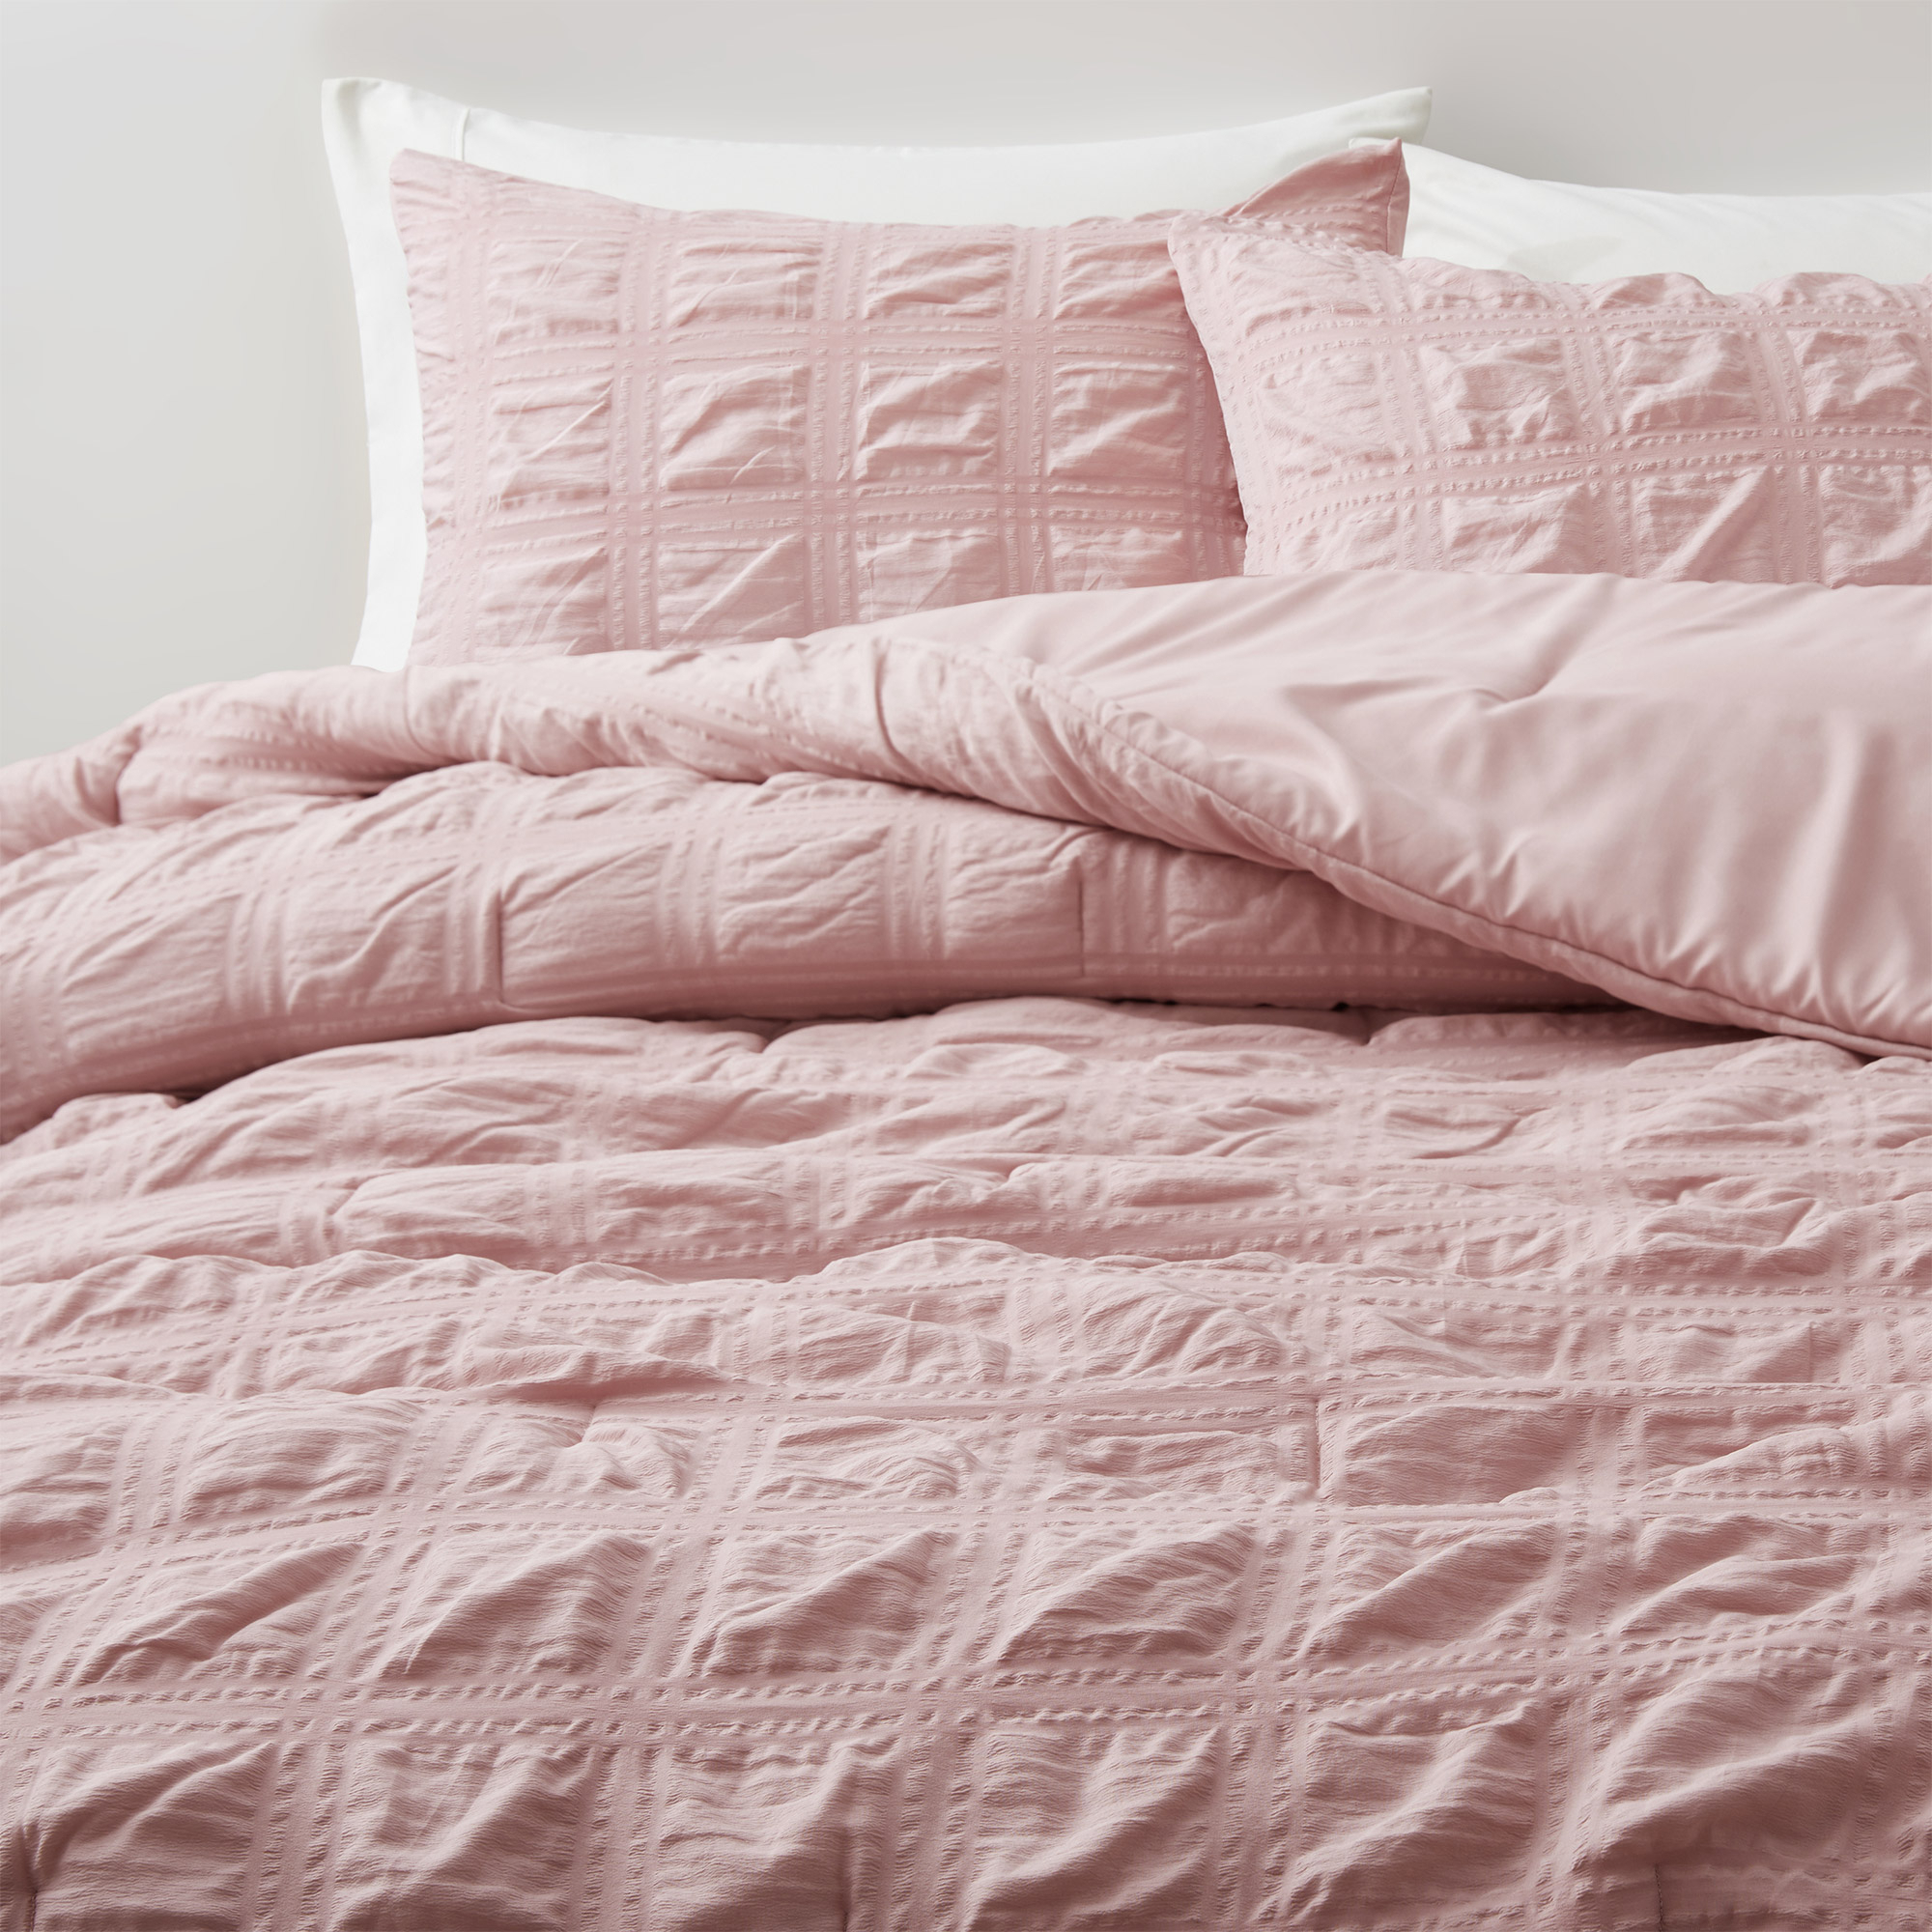 All Season Crinkle Textured Down Alternative Comforter Set-Seersucker Bedding Set - Pink, Full/Queen